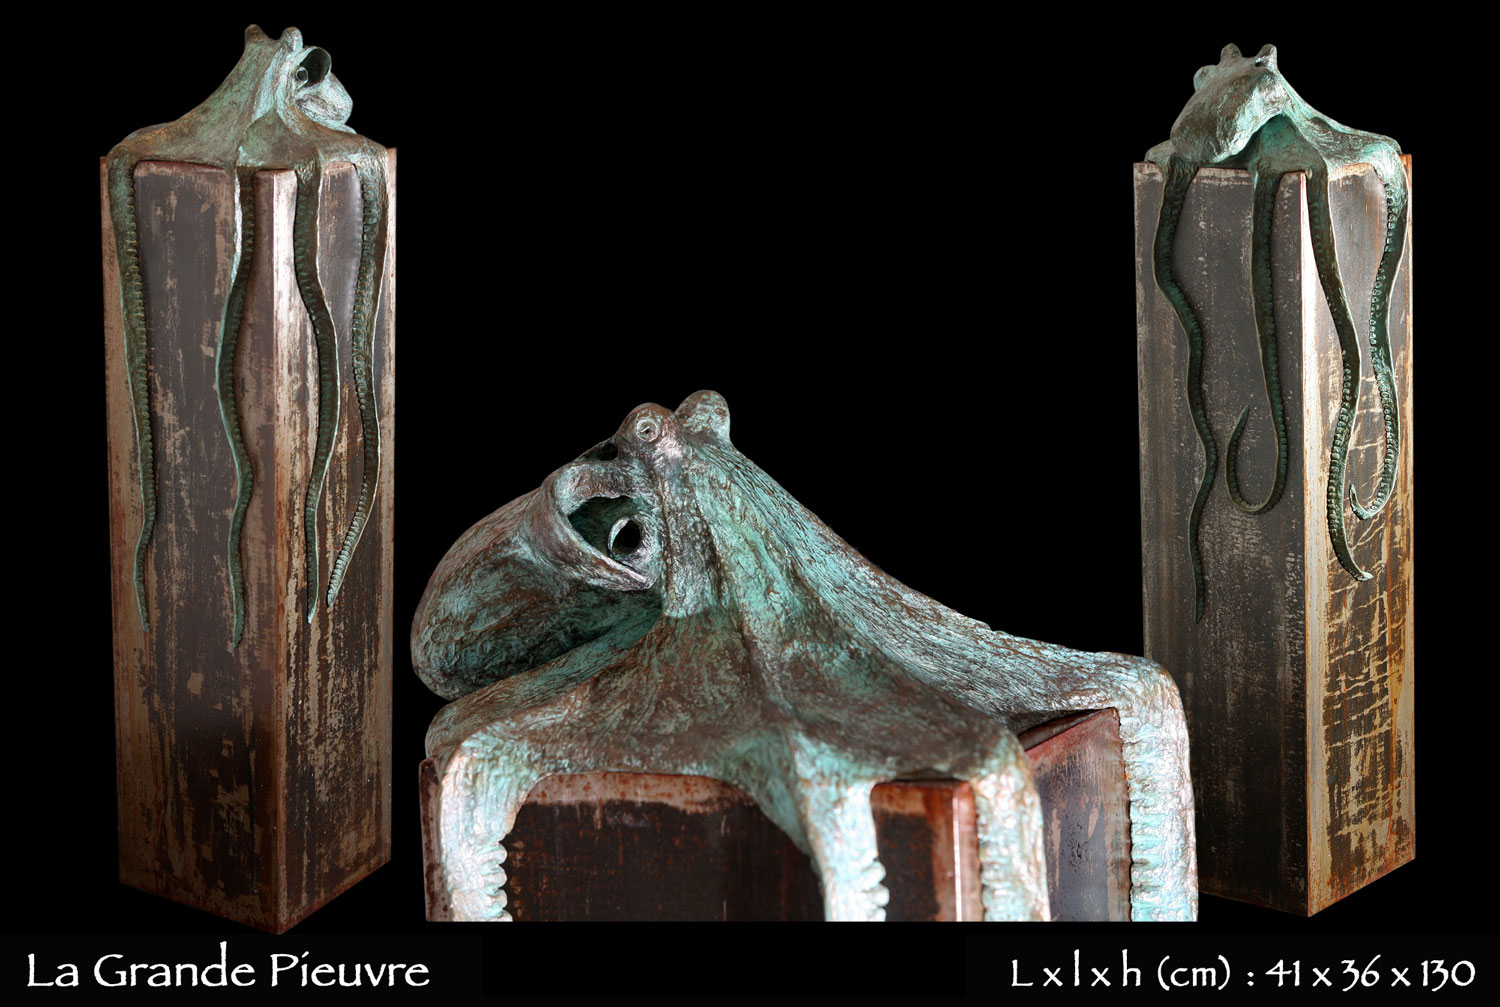 statue en bronze d'une grande pieuvre enchassant un bloc en fer